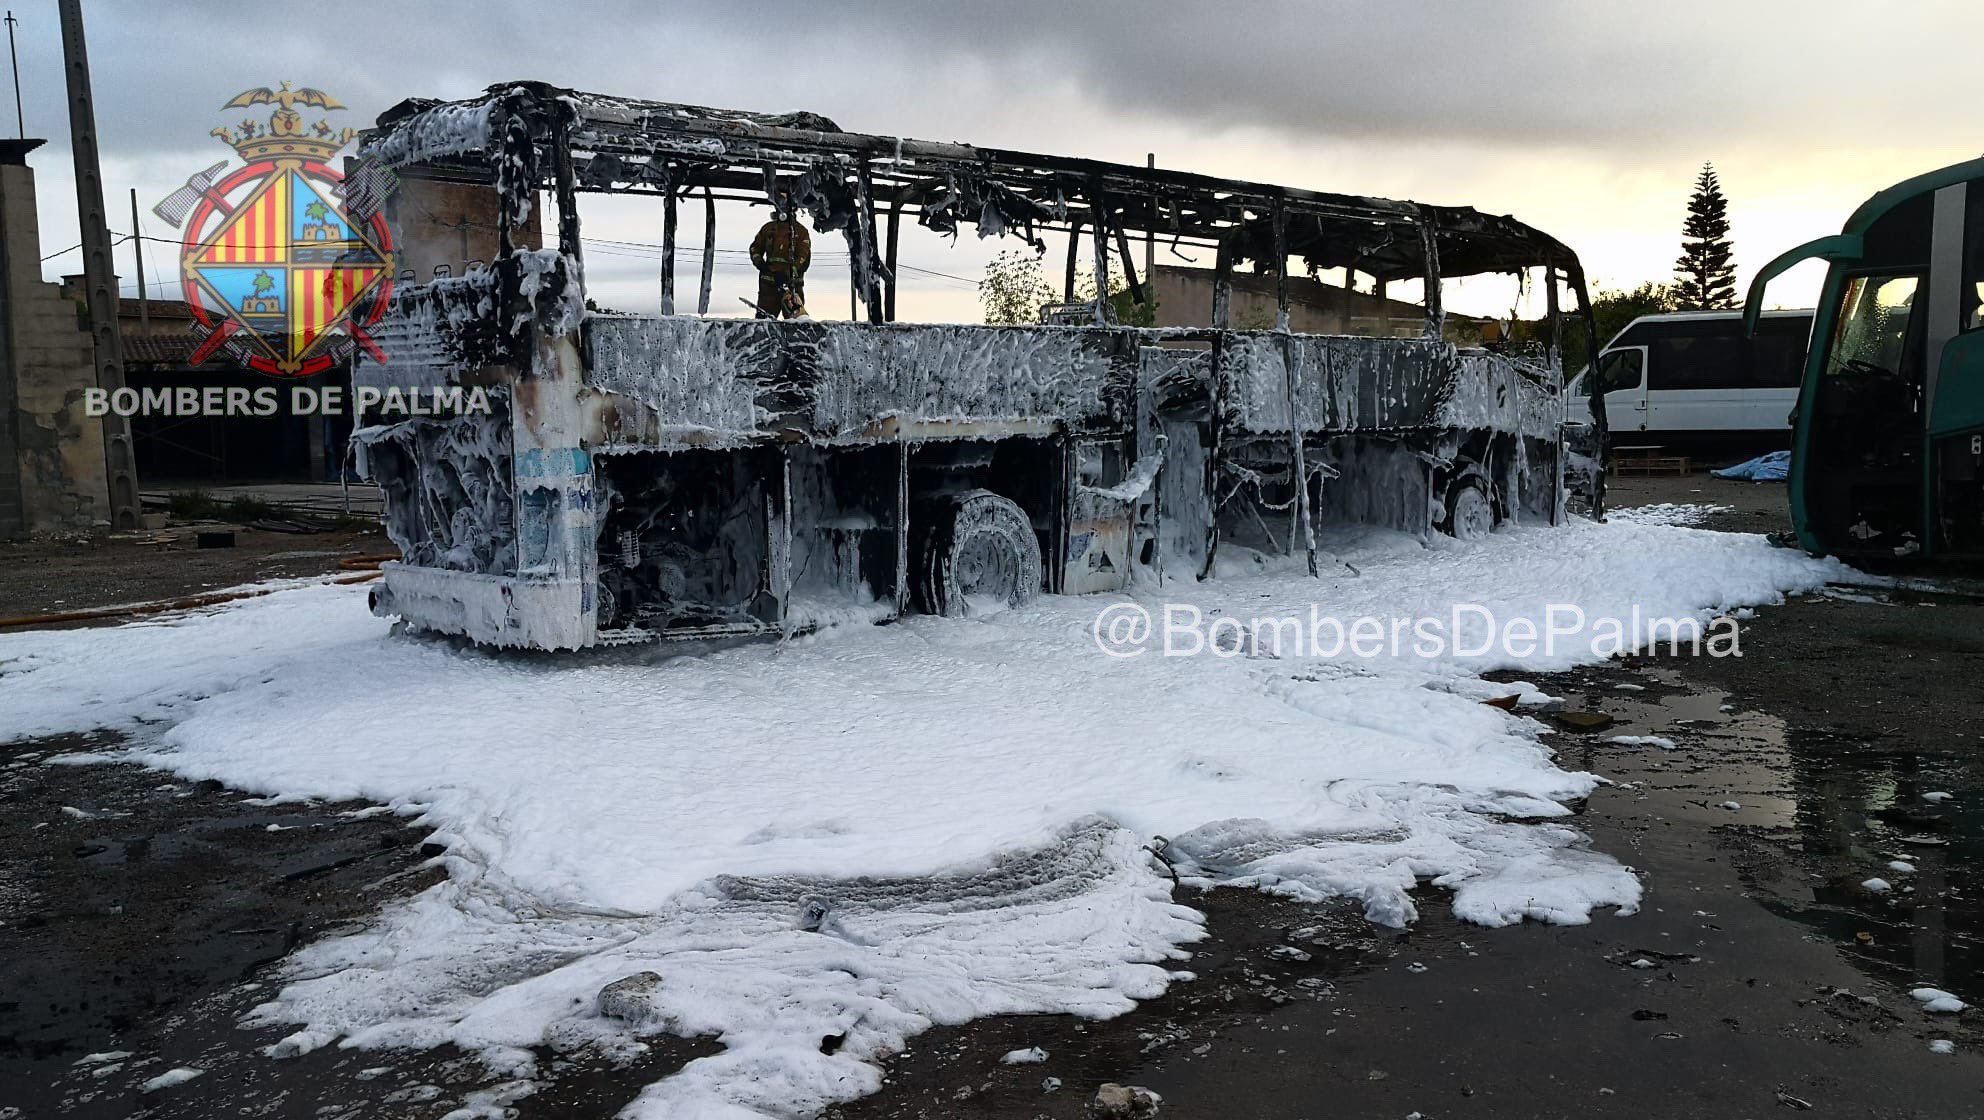 Los Bomberos de Palma extingue el incendio de un autocar abandonado en Camí de Son Palou